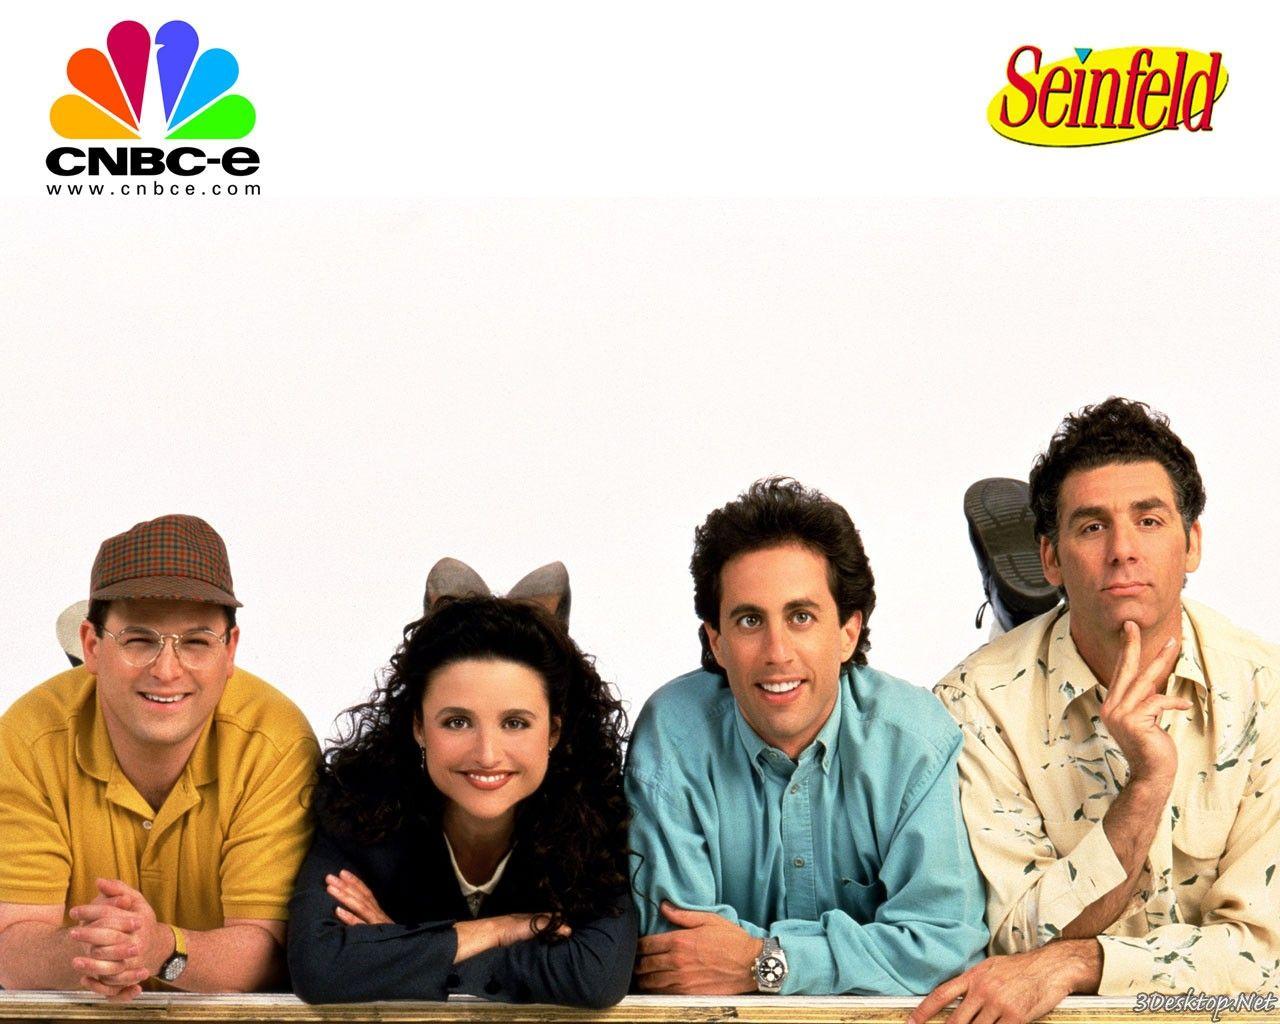 Seinfeld Wallpaper, Seinfeld Image for Desktop Handpicked